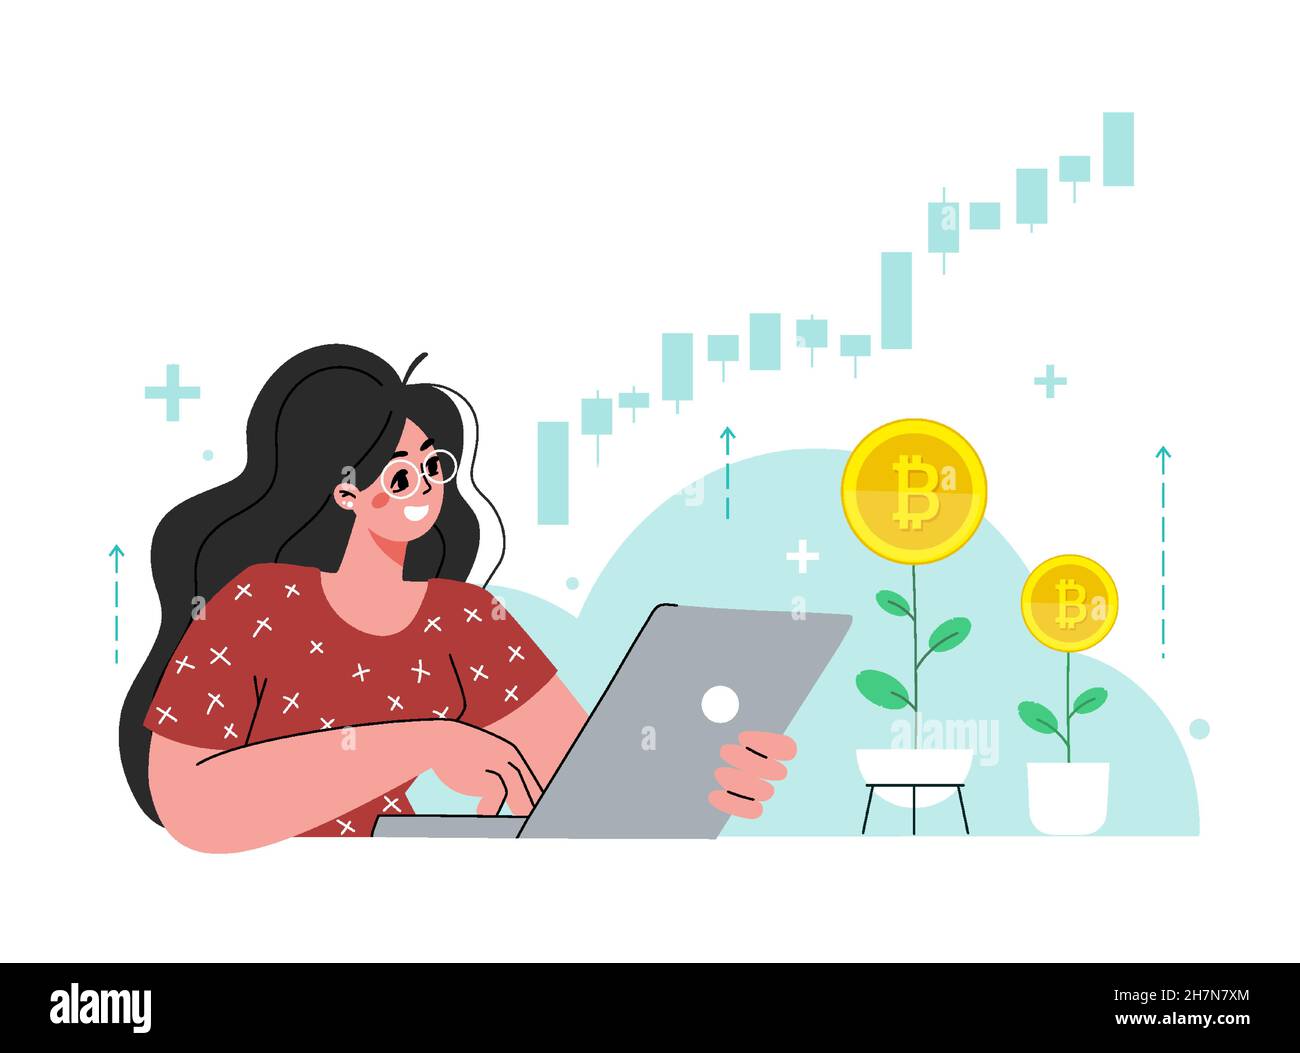 Das Mädchen sitzt am Laptop. Die Frau investiert in den Bitcoin-Aktienmarkt. Steigende Rate, Einkommensgewinn, mehr Geld. Junge Generation.Vektor flach illustrati Stock Vektor